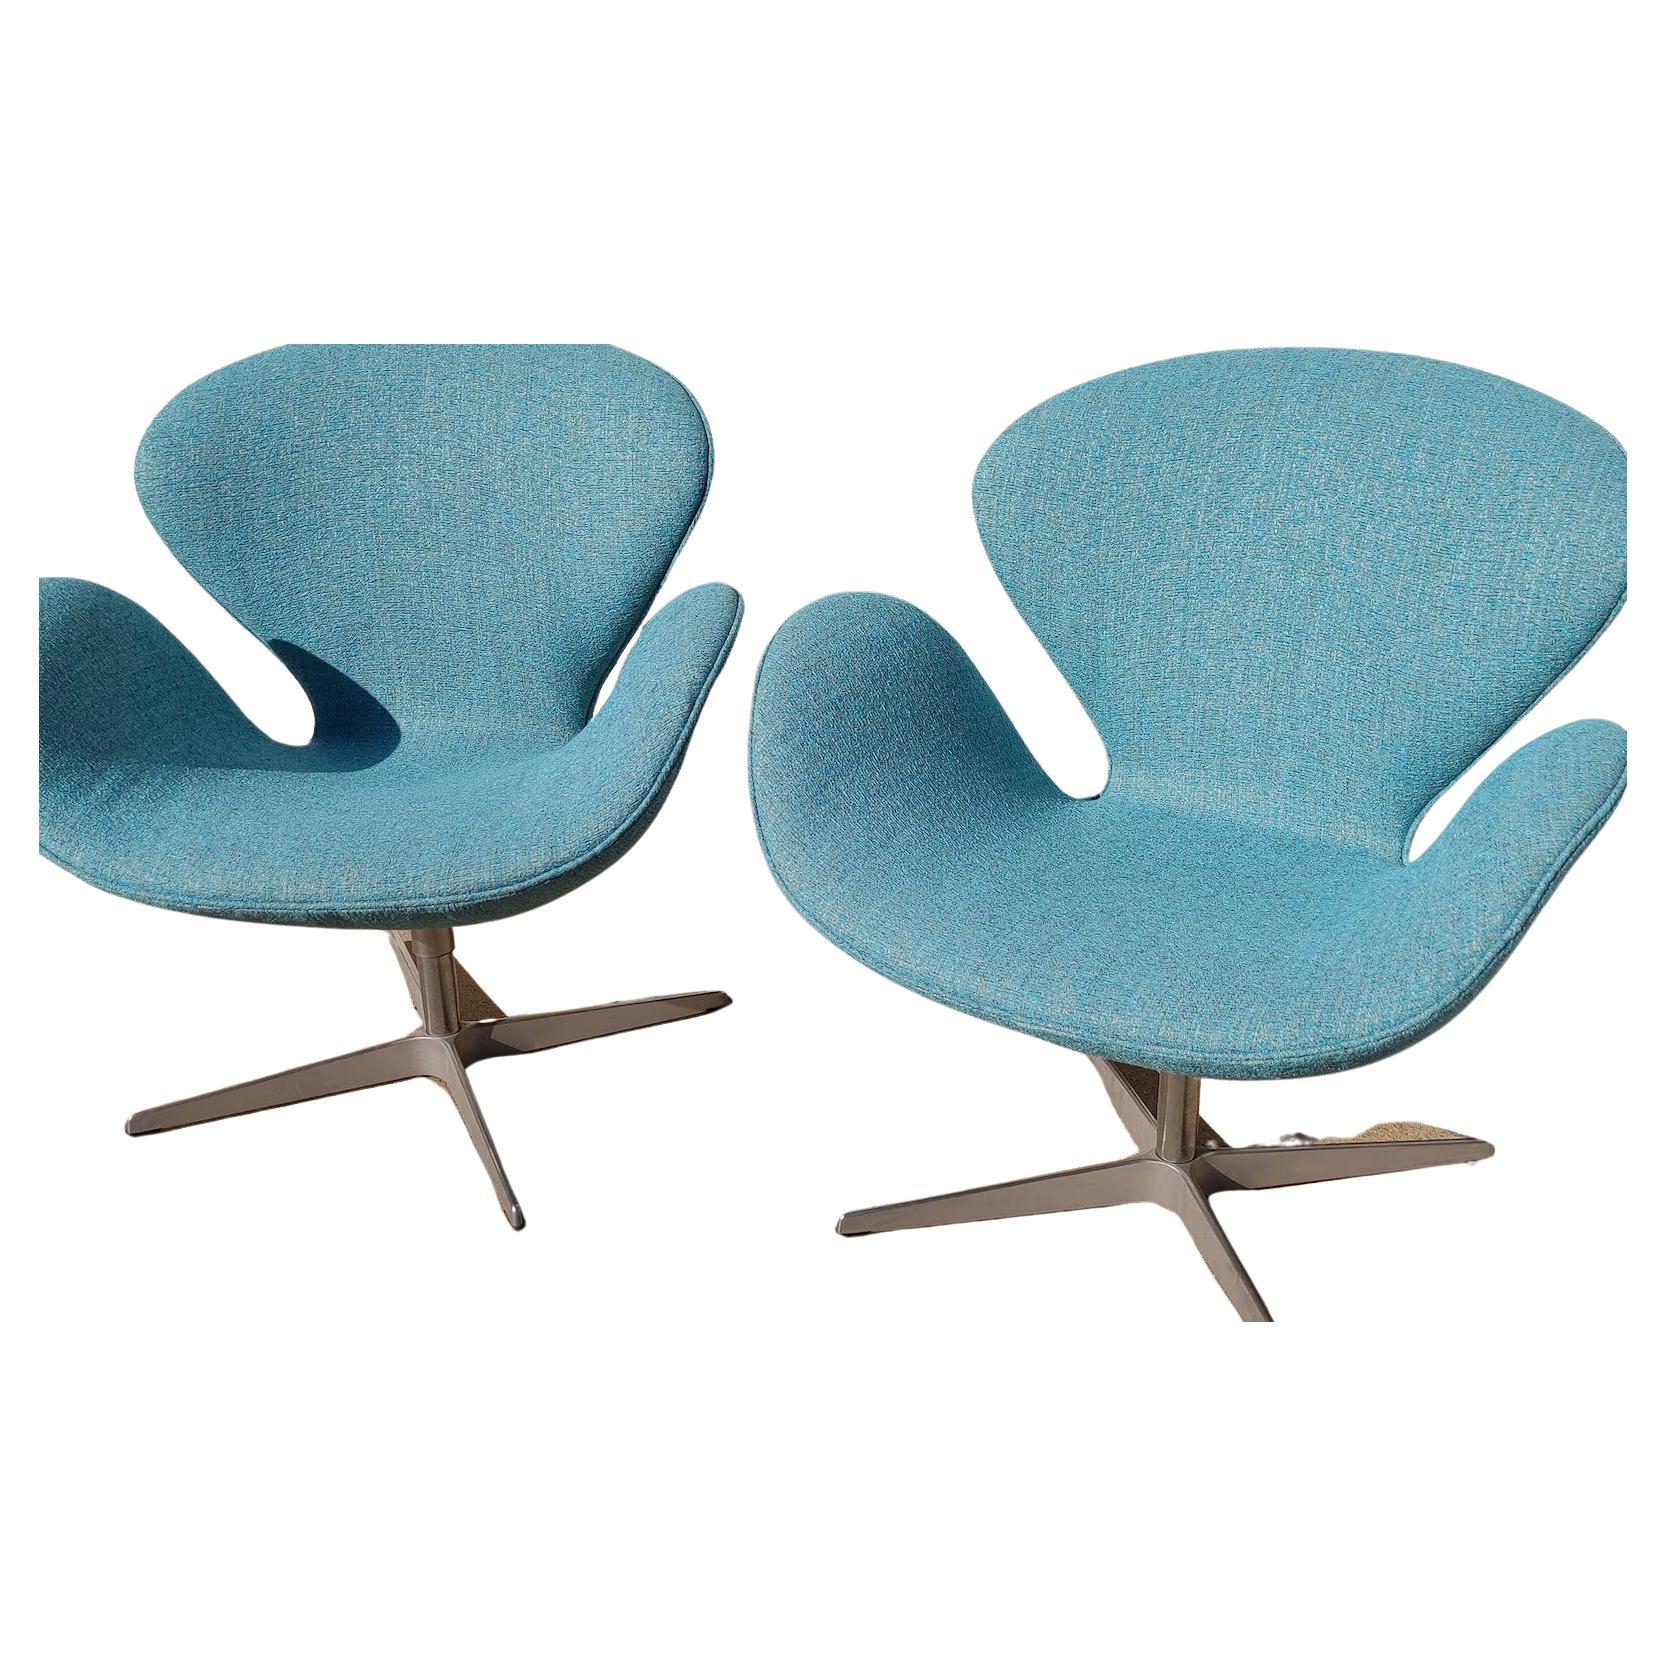 Paire de chaises Swan de style moderne danois du milieu du siècle Arne Jacobsen

Vendu par paire. État vintage supérieur à la moyenne et structurellement sain. Légère usure attendue sur les bases. La tapisserie est neuve. Les photos des annonces